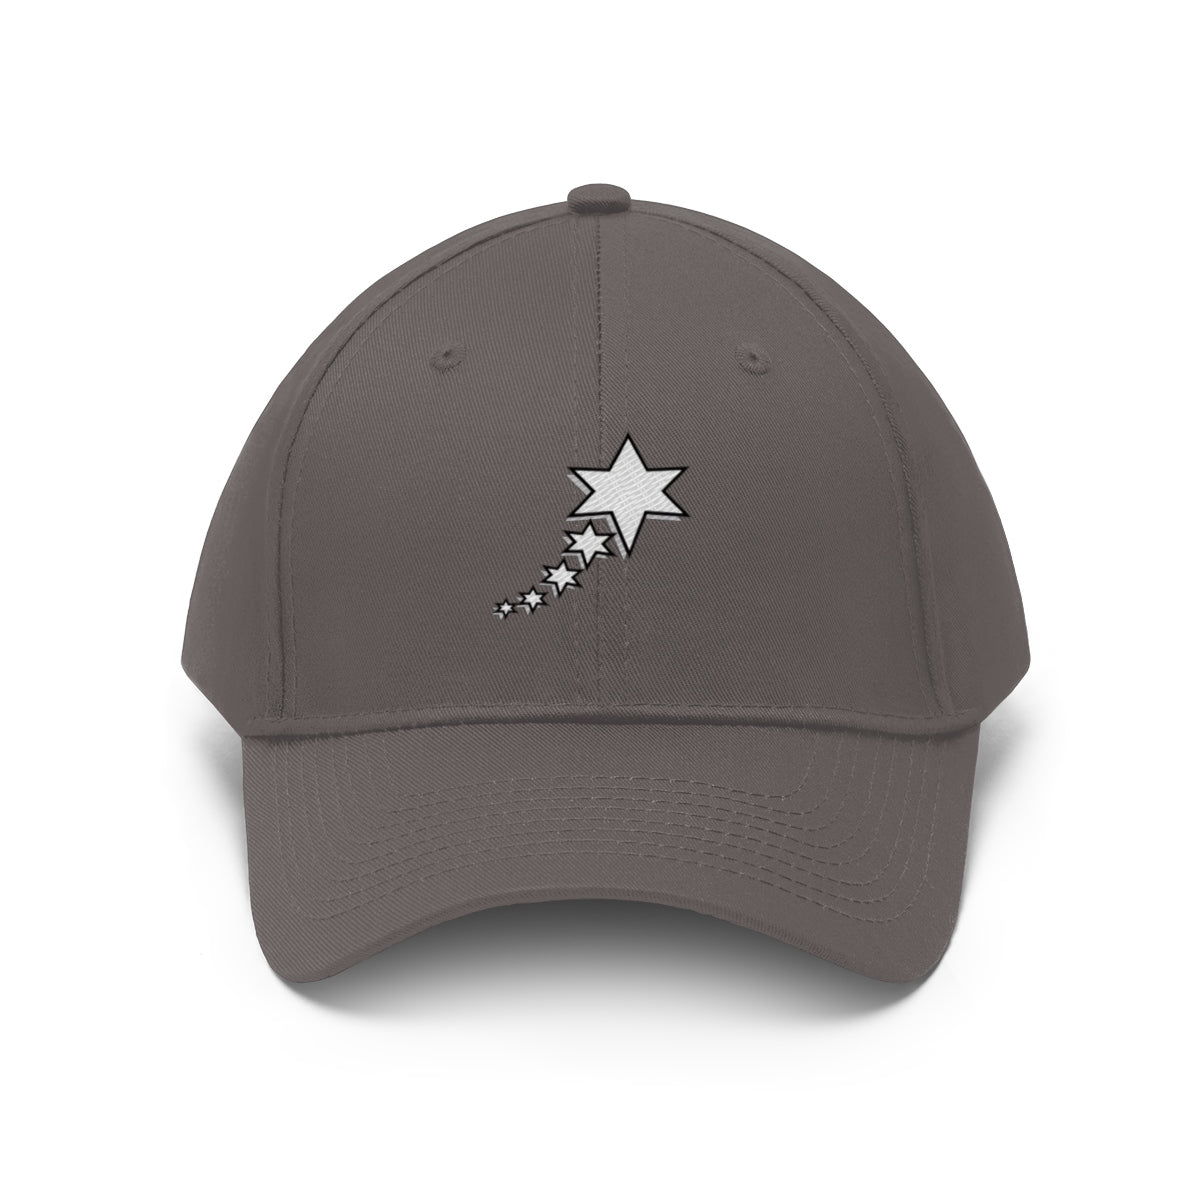 Unisex Twill Hat - 6 point 5 Stars (White)